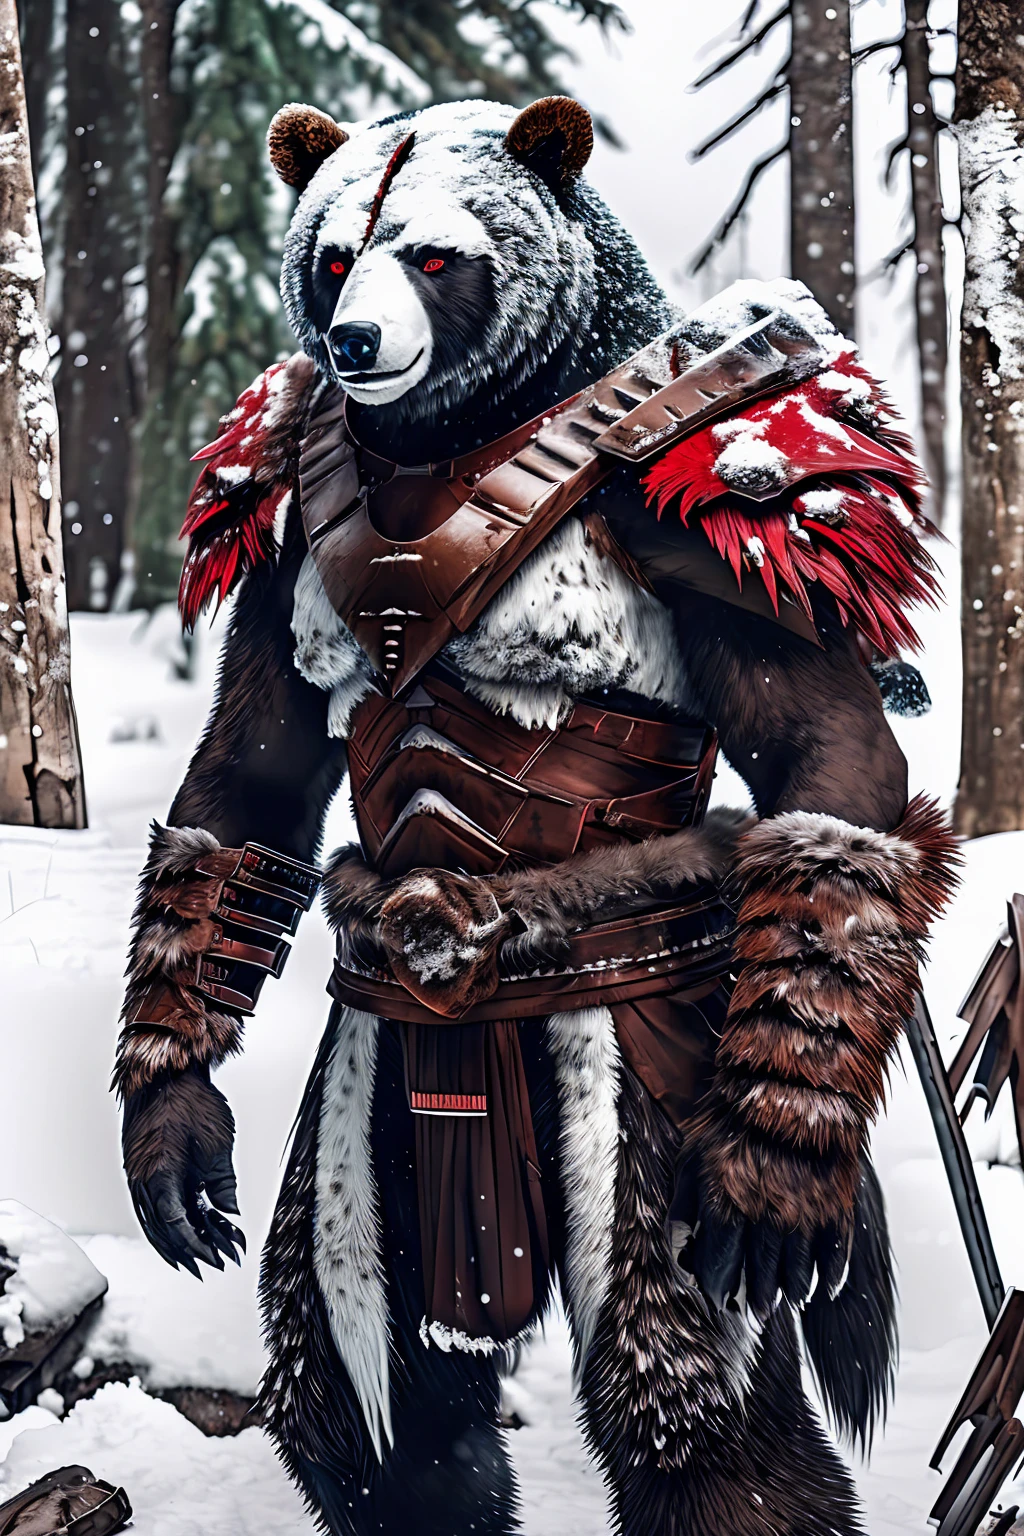 Bärenmutant steht auf zwei Beinen, Schnee-Hintergrund, brutal!, ziehe eine Kriegerrüstung an, große Krallen, Durstig nach Blut, Großer, Dickes Fell, keine Rückwand, Schnee-Hintergrundมืดมิด, Bindehautentzündung, dämonische Aura